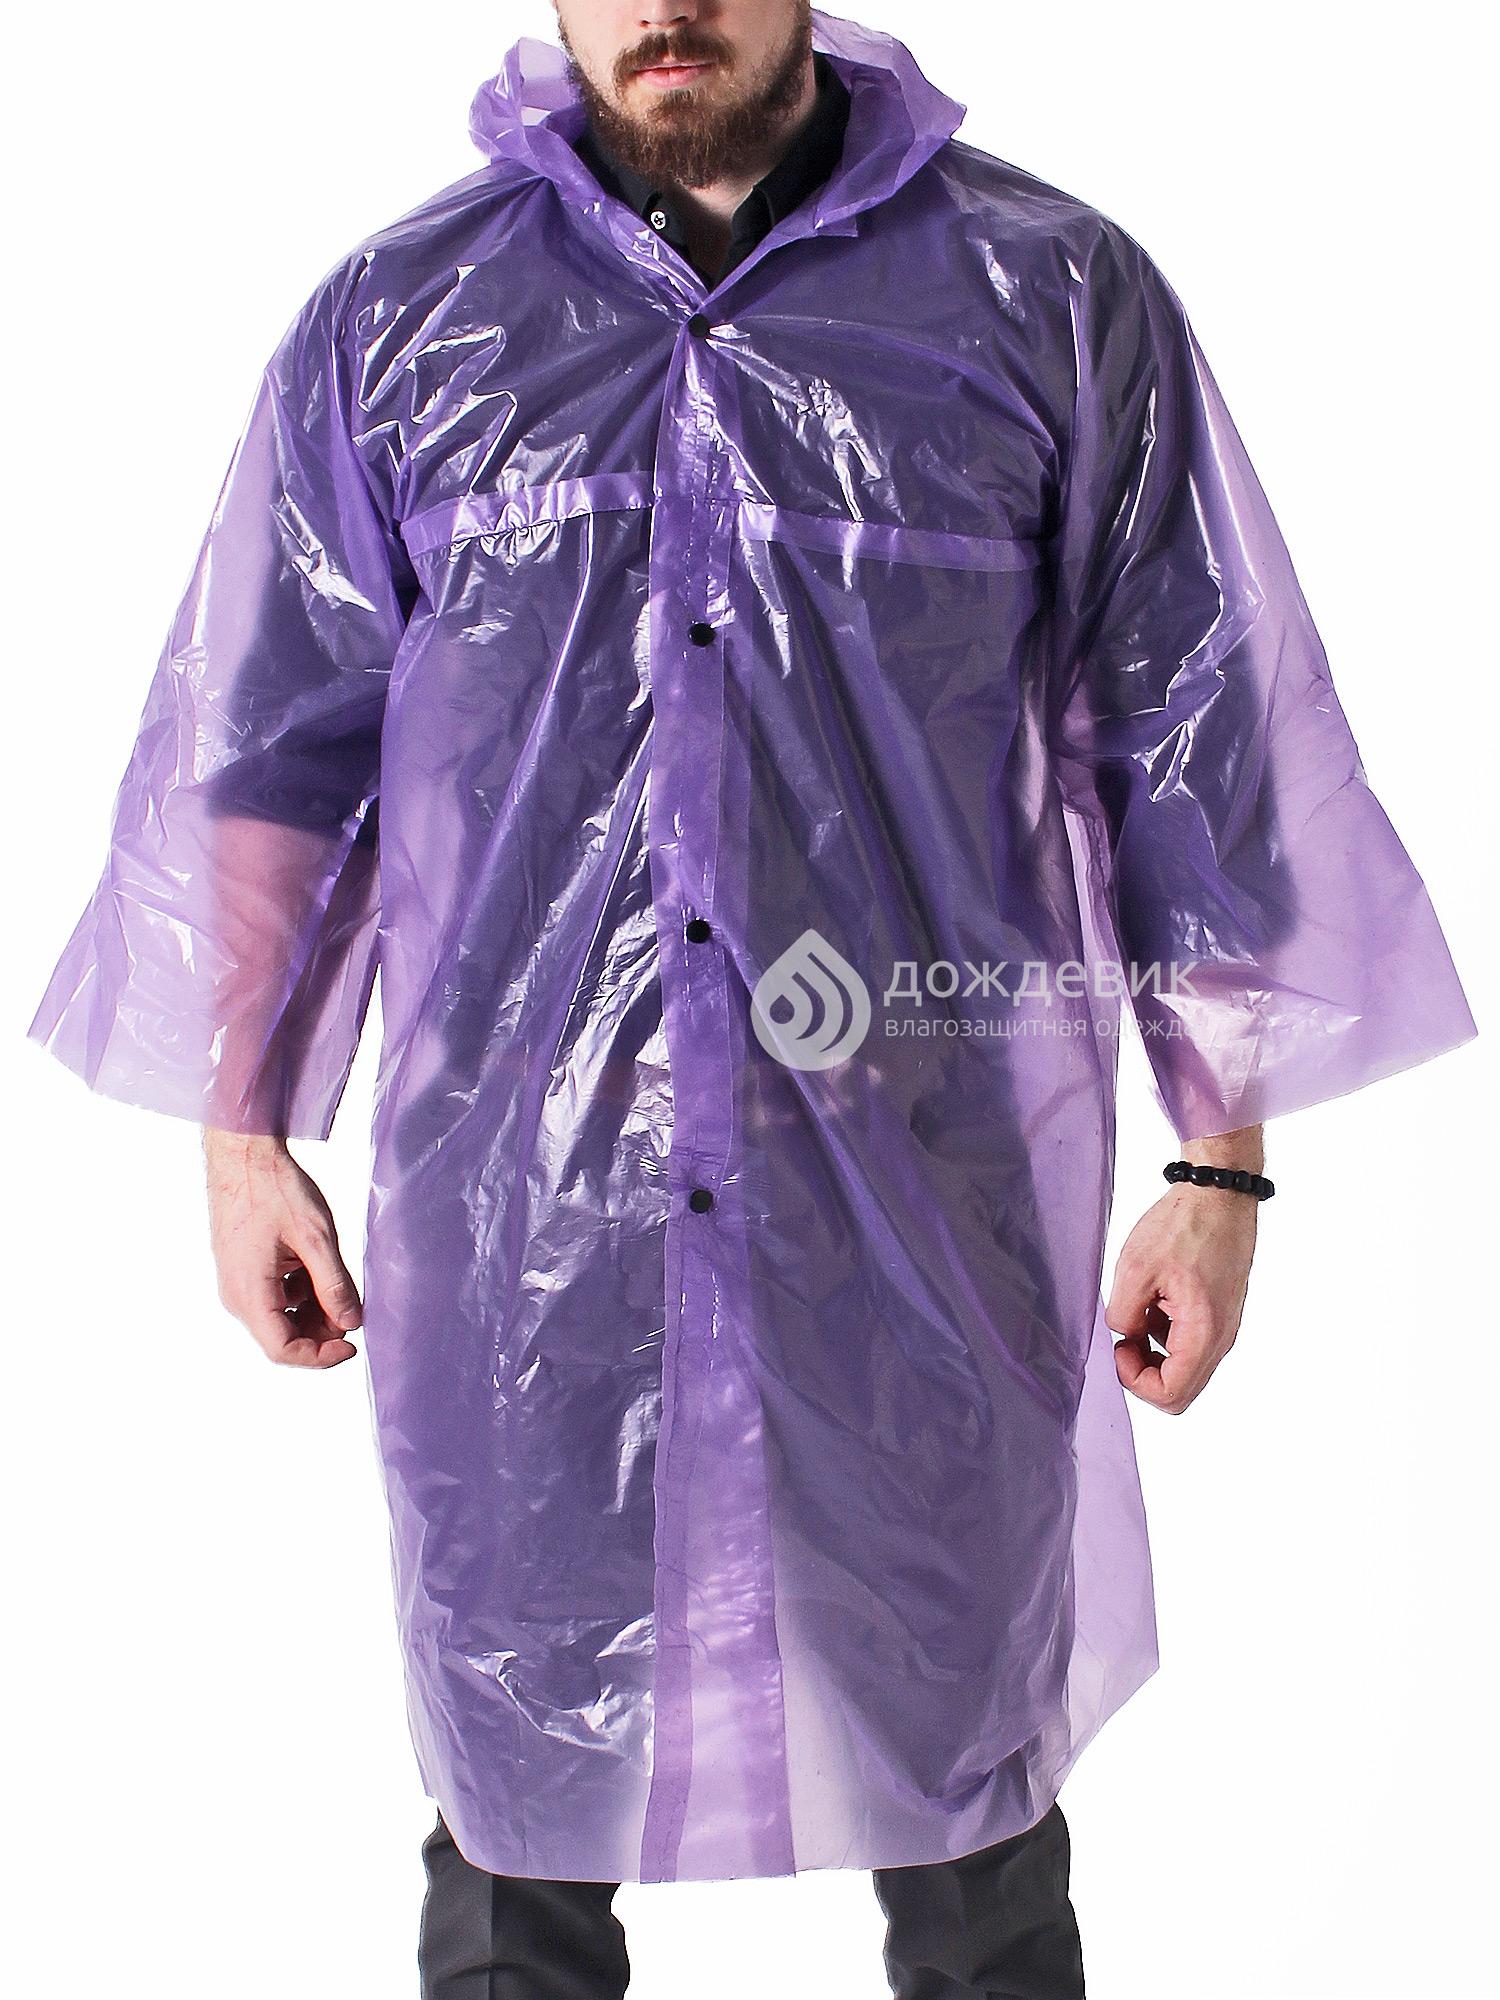 Плащ-дождевик полиэтиленовый на кнопках фиолетовый